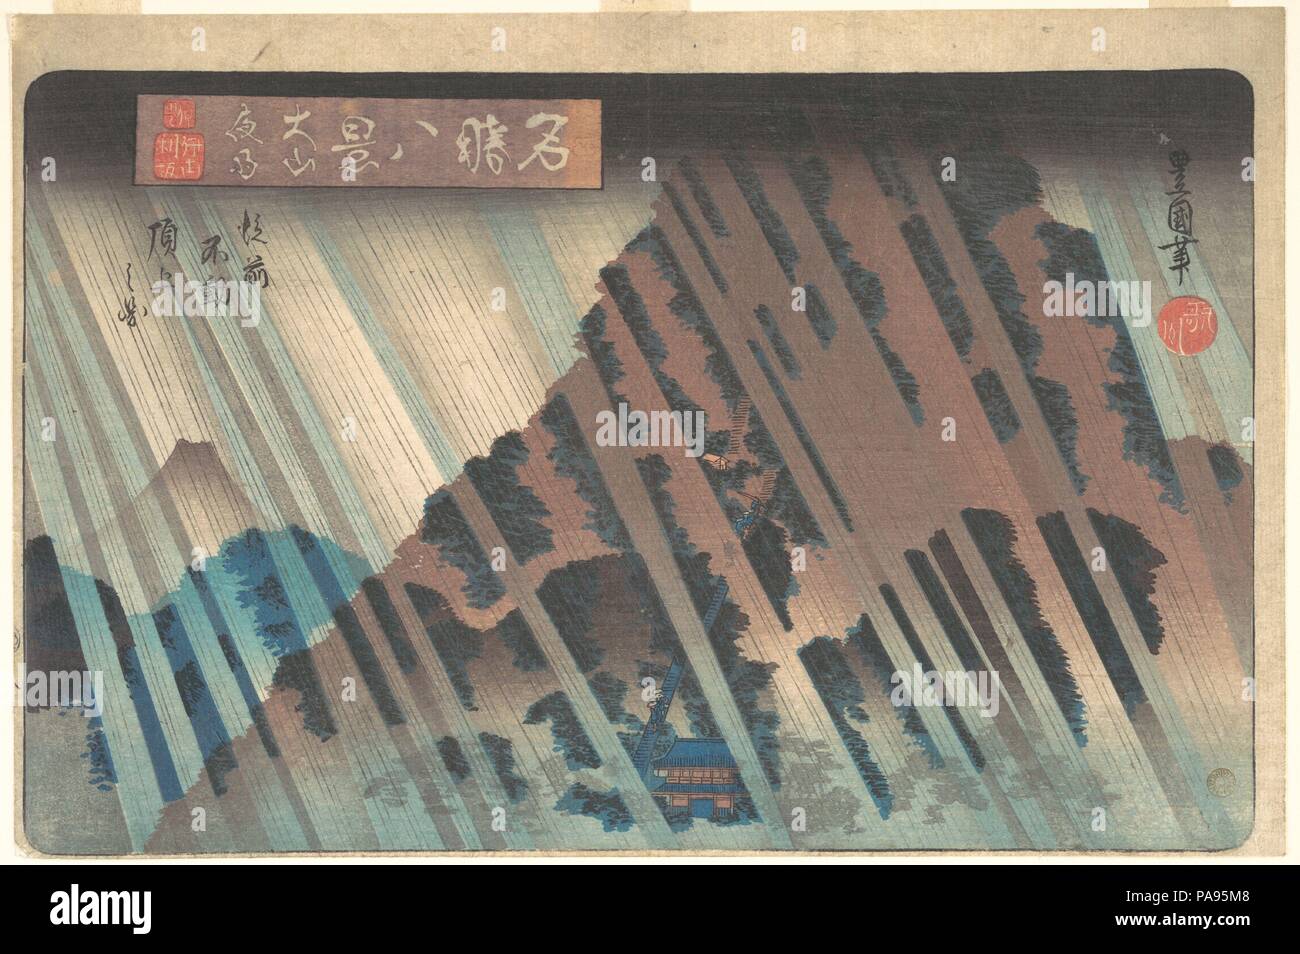 Regen in der Nacht an Oyama, aus der Serie "Acht berühmten Ansichten von Kanagawa". Artist: Utagawa Toyokuni II (Japanisch, 1777-1835). Kultur: Japan. Abmessungen: H. 9 1/2 in. (24,1 cm); W. 14 5/16 in. (36,4 cm). Datum: Ca. 1830. Utagawa Toyoshige, Student des ersten Toyokuni (1769-1825), um den Namen seines Meisters als Toyokuni II im Jahre 1825 gelungen. In Utagawa Genealogie, Toyoshige und die berühmten hiroshige sind so etwas wie Cousins. Die berühmtesten Drucken in der Reihe "Acht berühmten Ansichten von Kanagawa, 'westlich von Edo, ist Regen in der Nacht an Oyama. Mount Oyama, das alte Zentrum von Berg Askese, wo die Guard Stockfoto